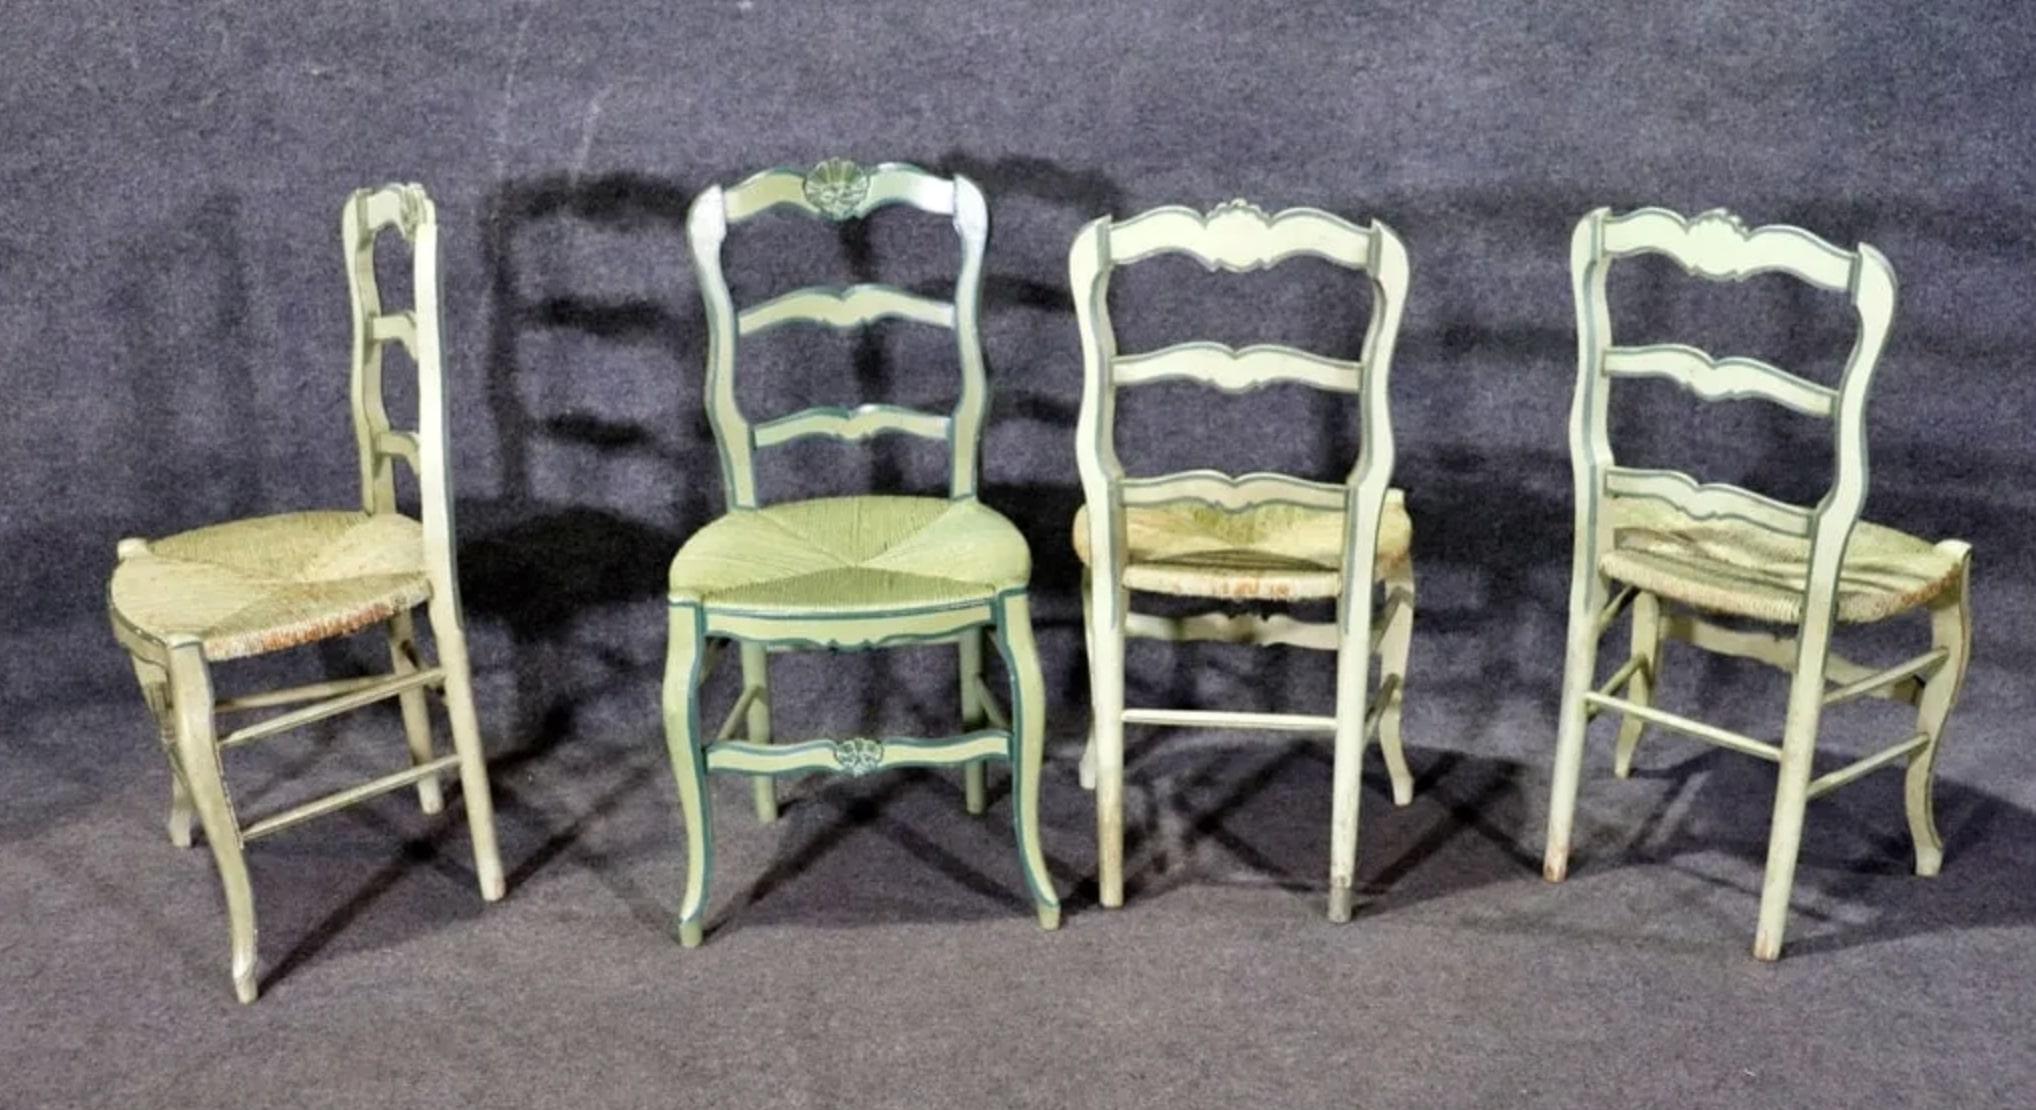 Ensemble de six chaises peintes avec assise en jonc. Chaises en bois massif de style campagne française avec assise tressée.
Fauteuils : 36 1/8